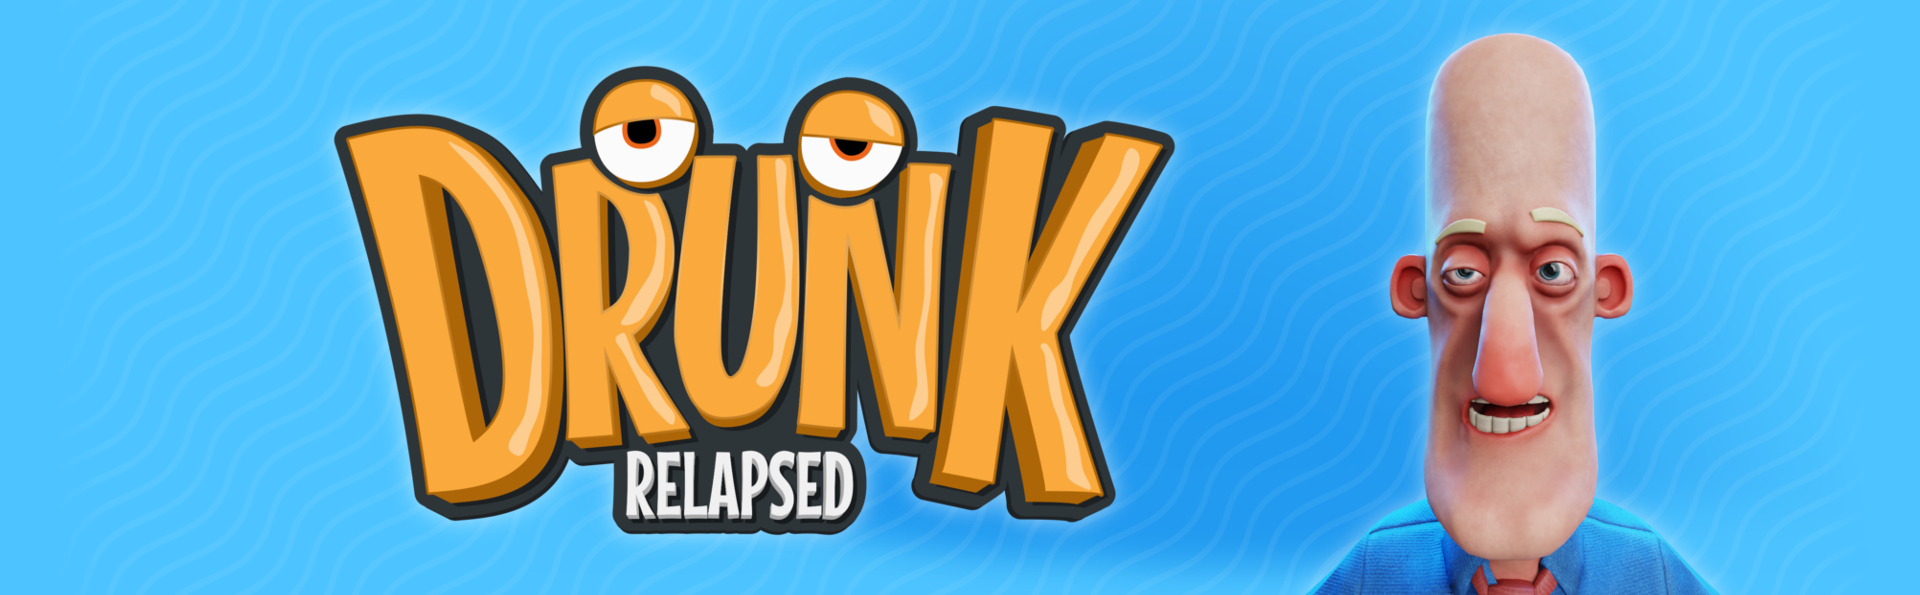 Drunk: Relapsed